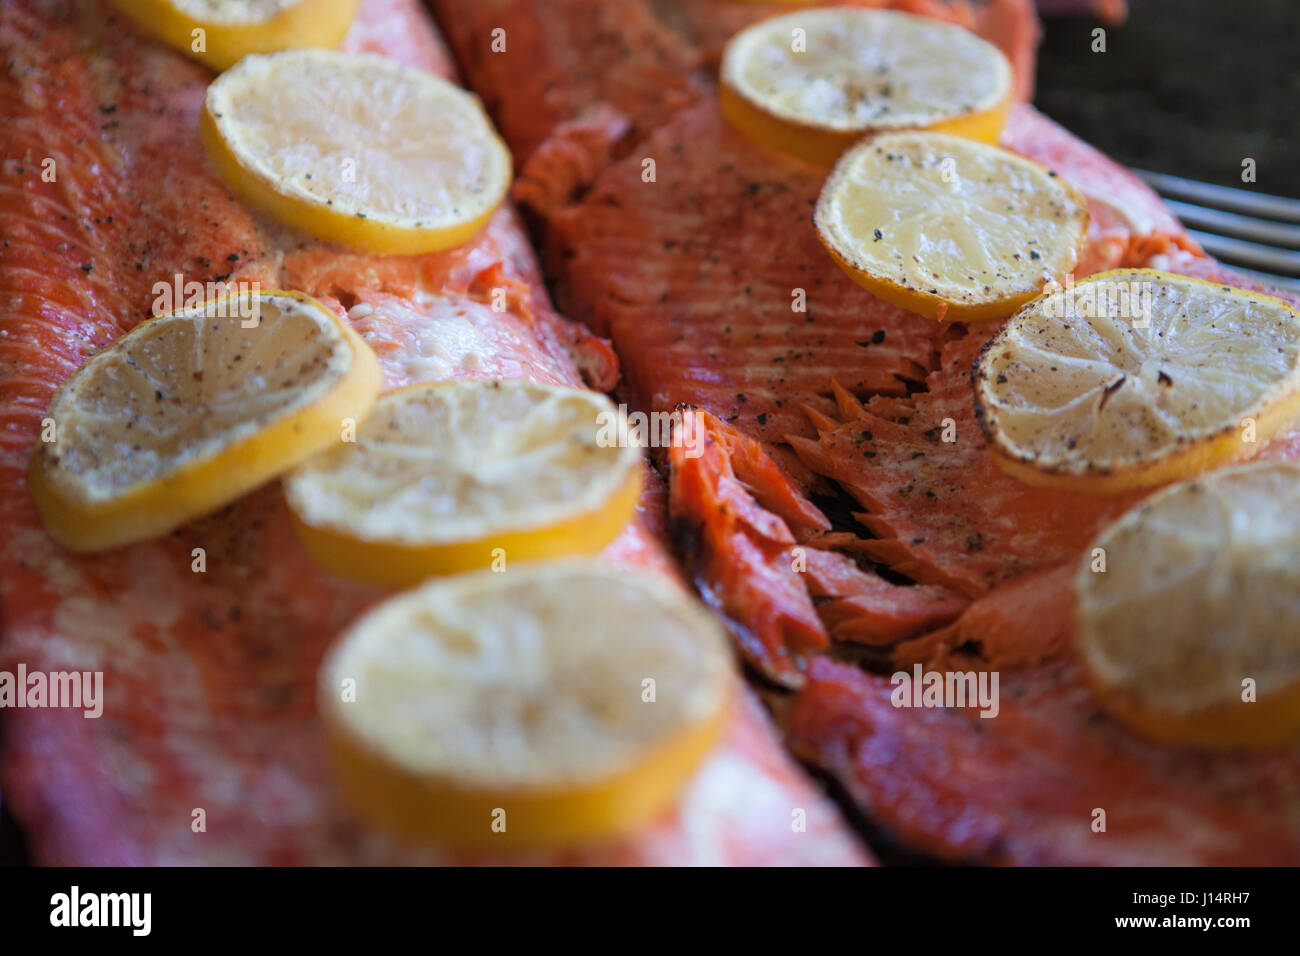 Deux côtés de saumon sauvage cuit sur une plaque recouverte de tranches de citron en attente d'être servi. Banque D'Images